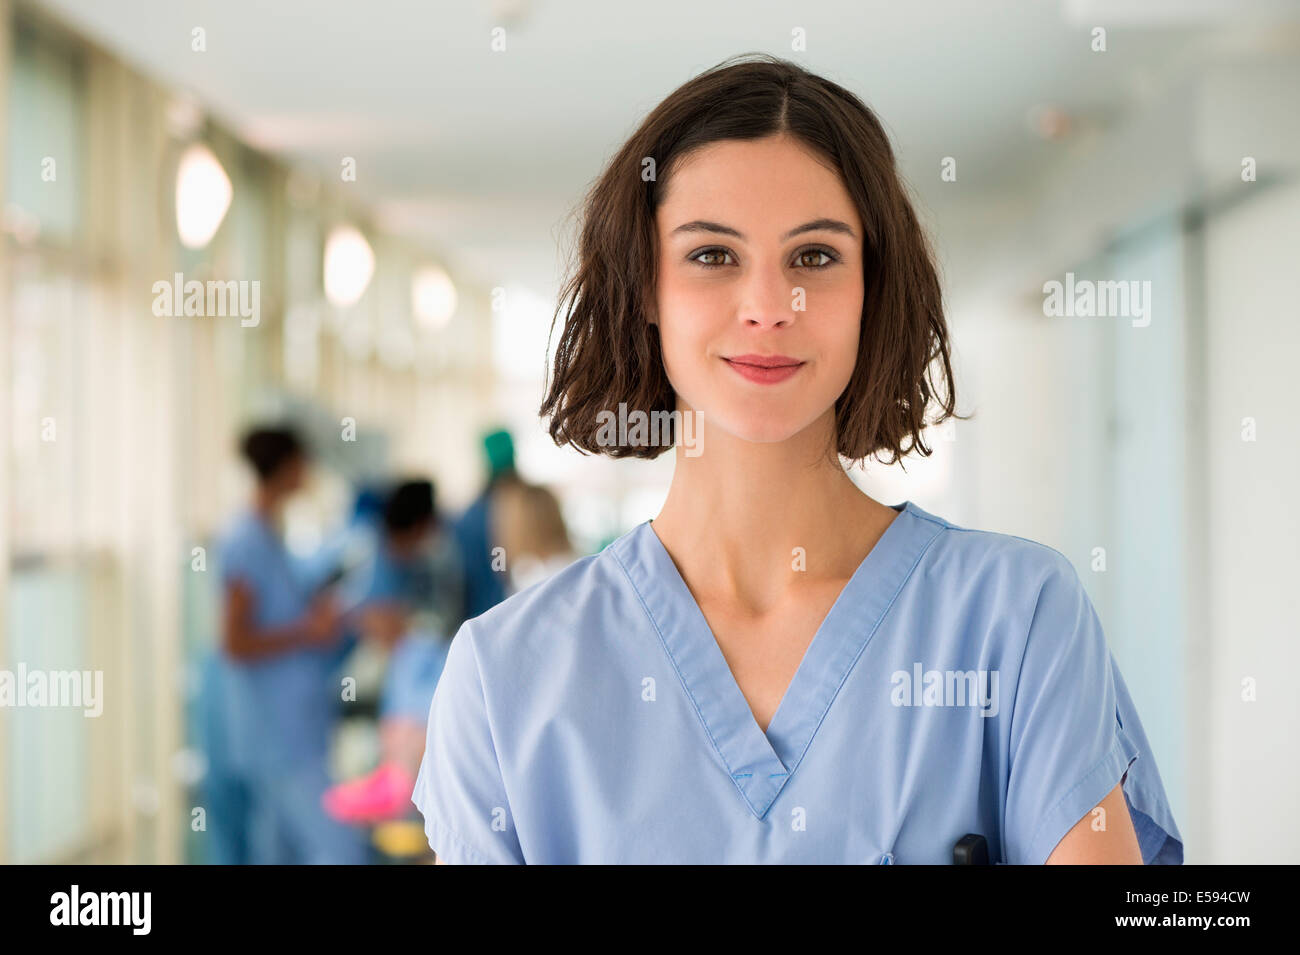 Retrato de una mujer sonriente enfermera Foto de stock